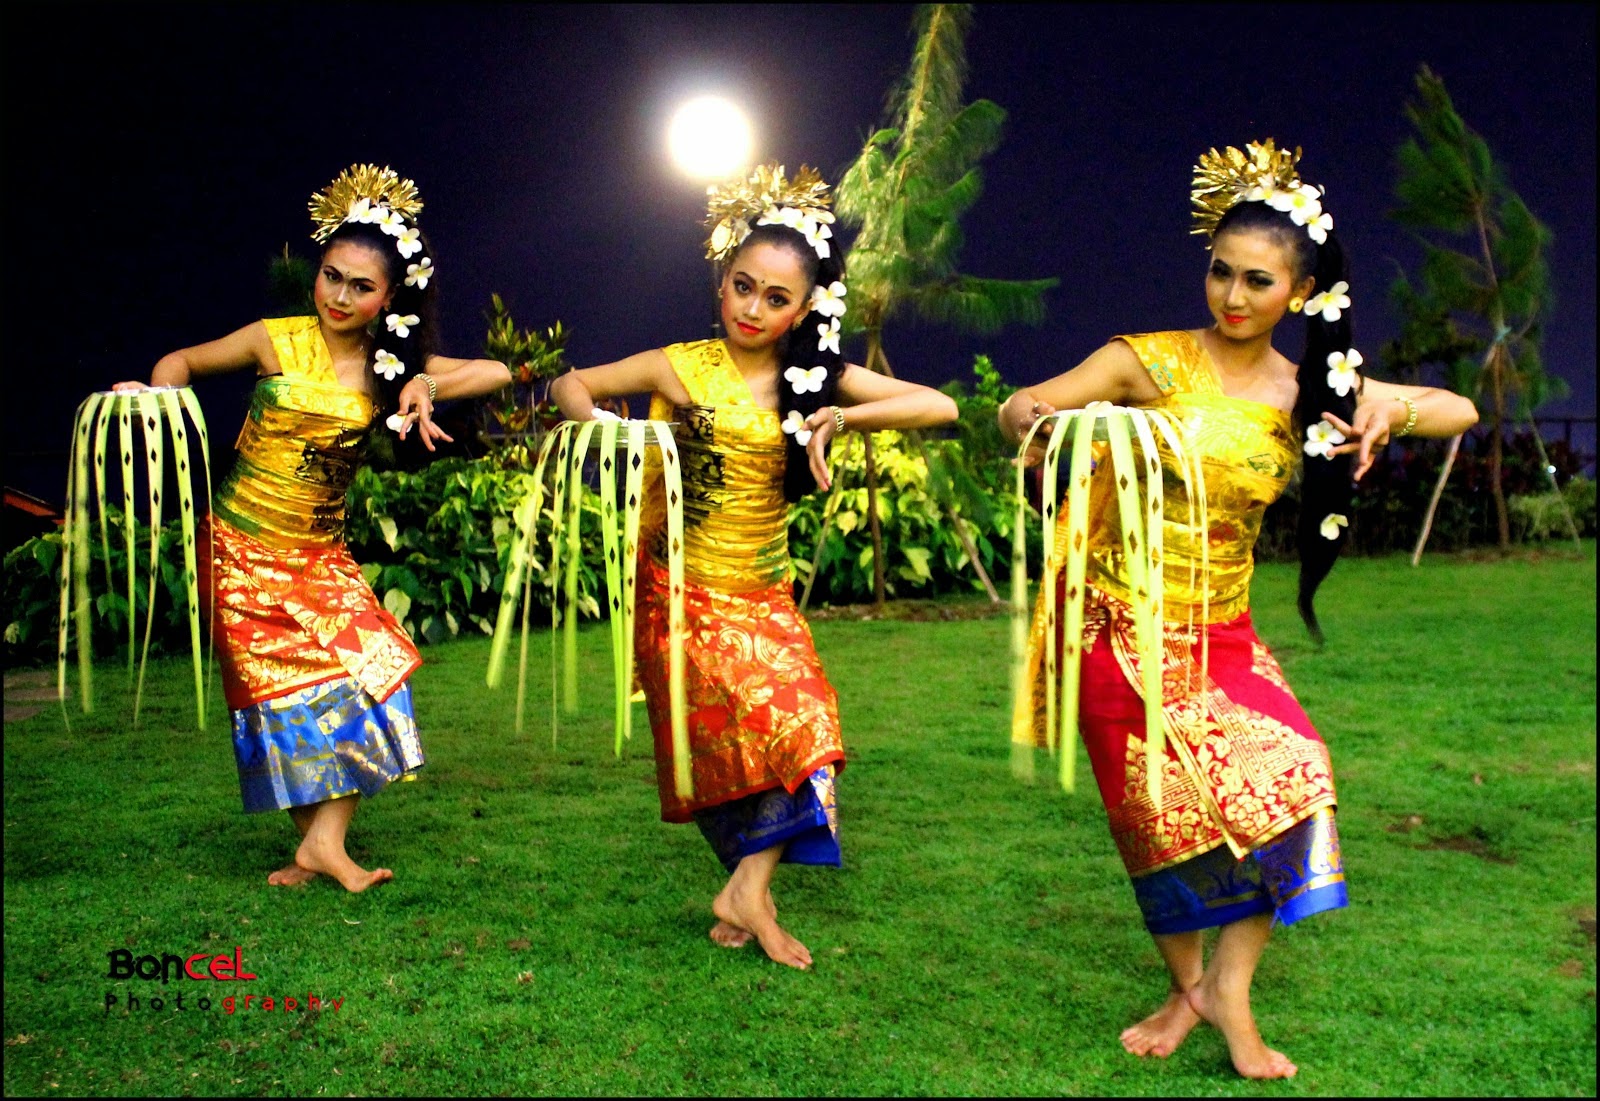 pendet dance is original art from bali Indonesia tari  